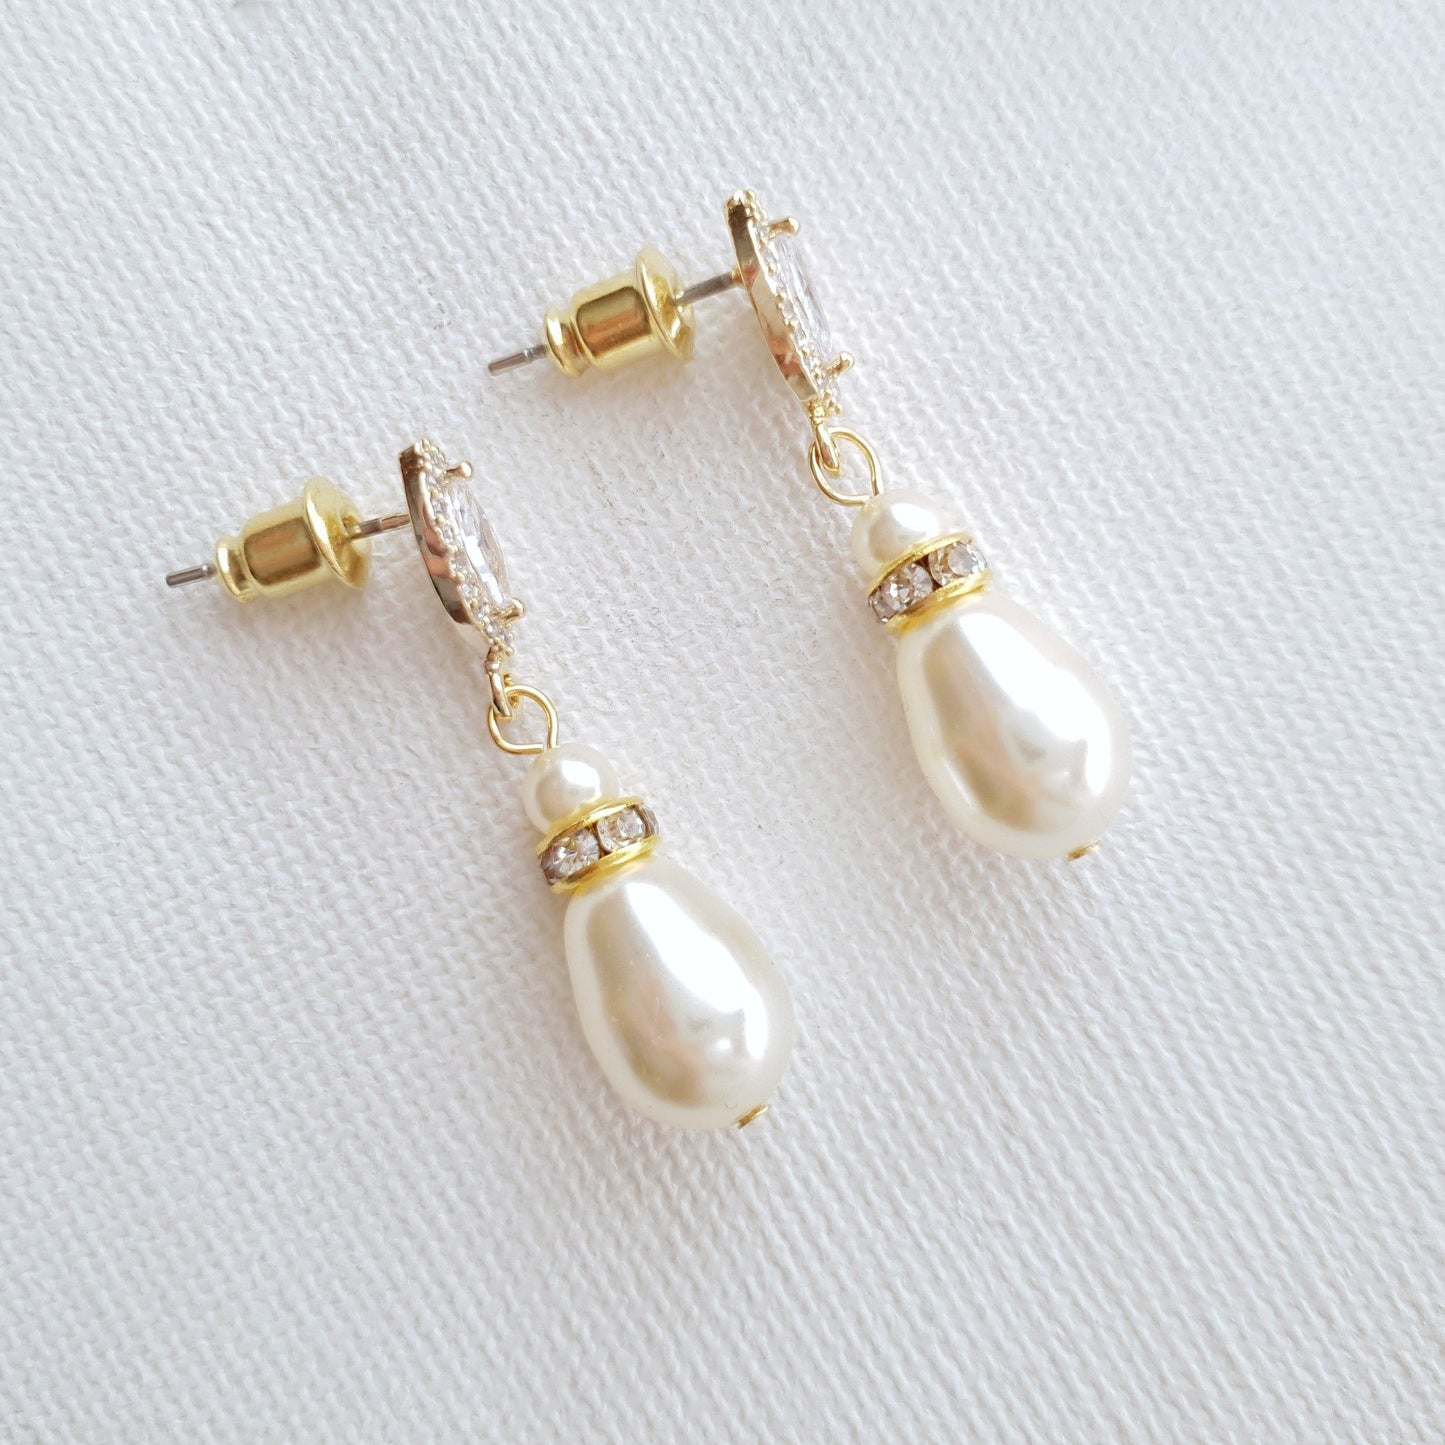 Rose Gold Pearl Teardrop Earrings for Brides- Ella - PoetryDesigns